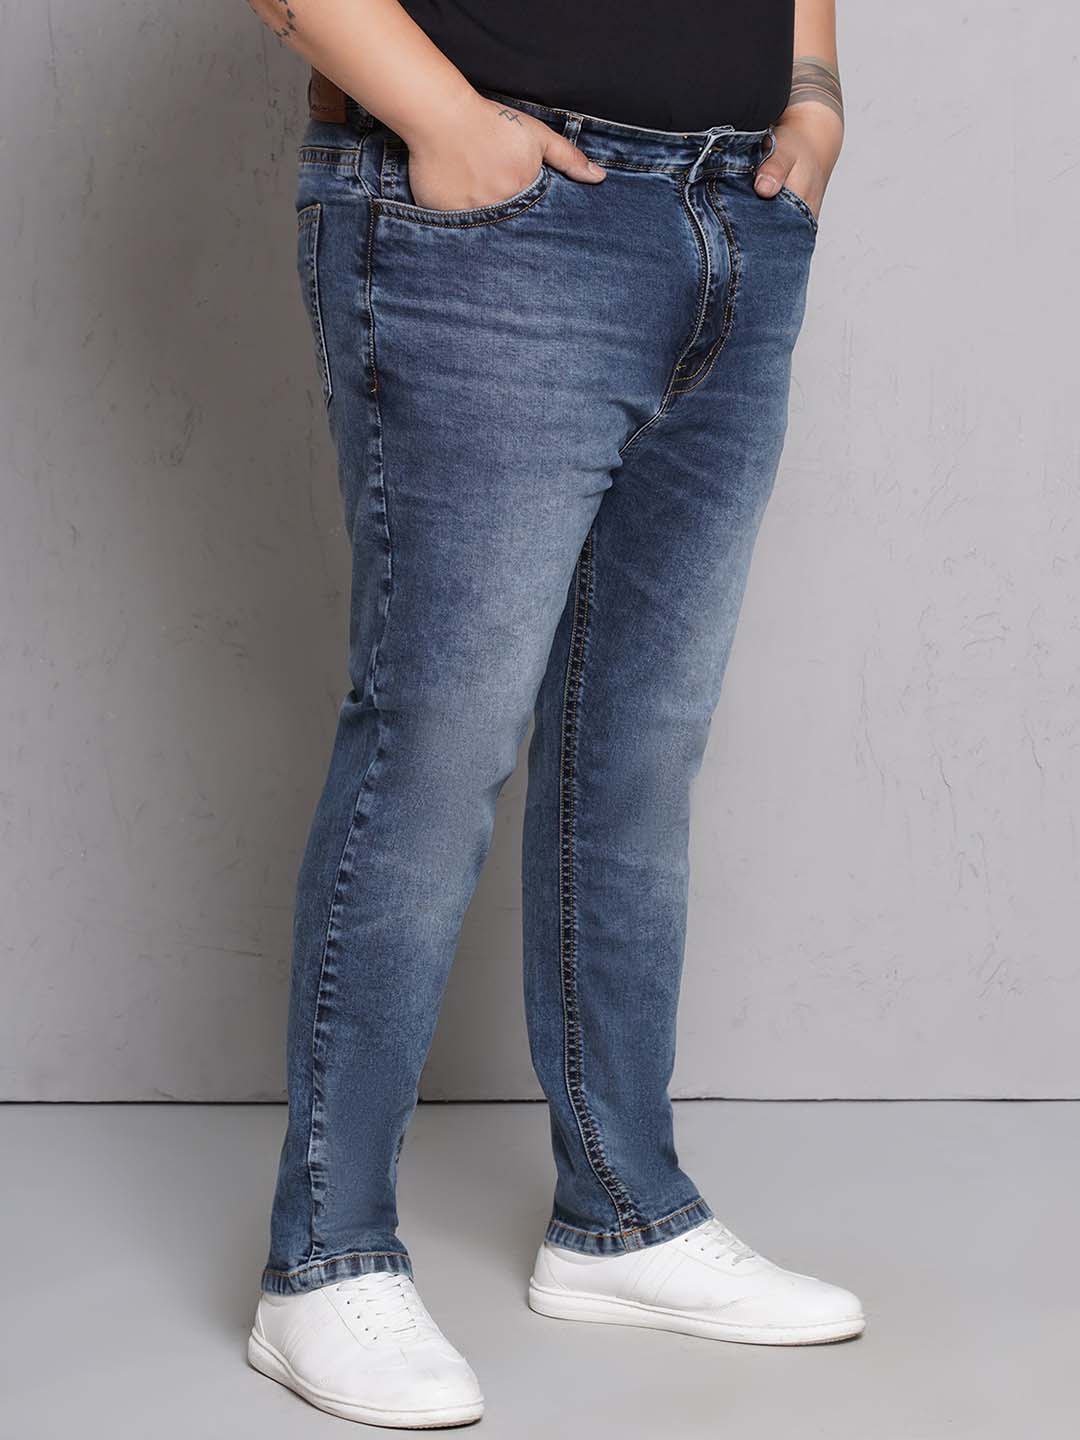 bottomwear/jeans/JPJ27116/jpj27116-3.jpg